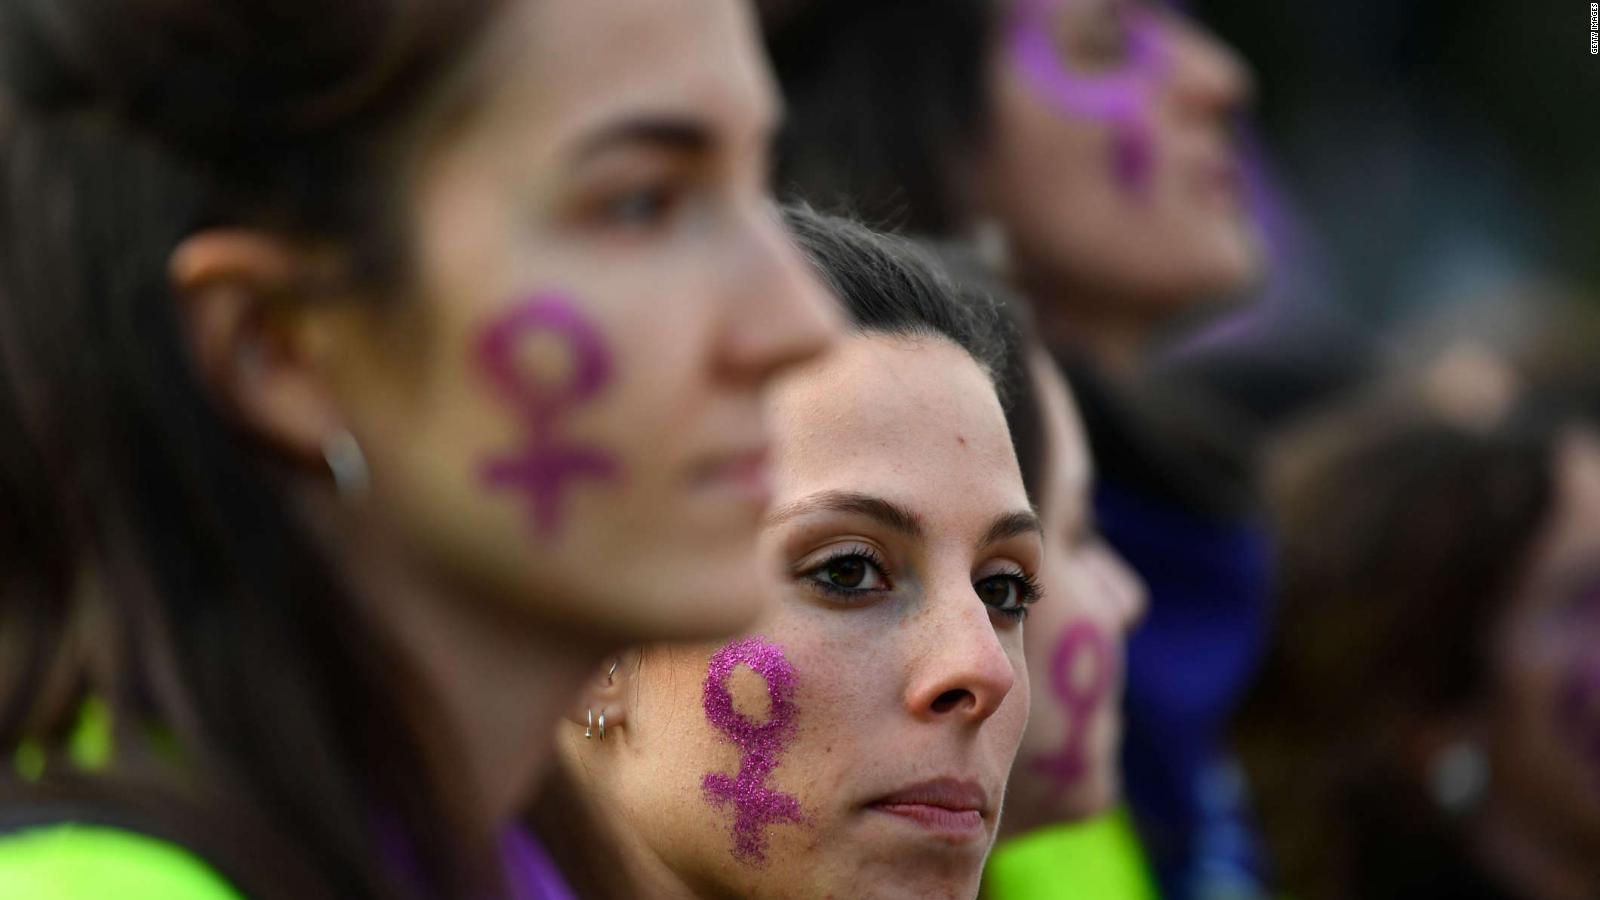 La mujer está viviendo una "encrucijada histórica" por sus derechos, asegura la ministra de Igualdad de España | Video